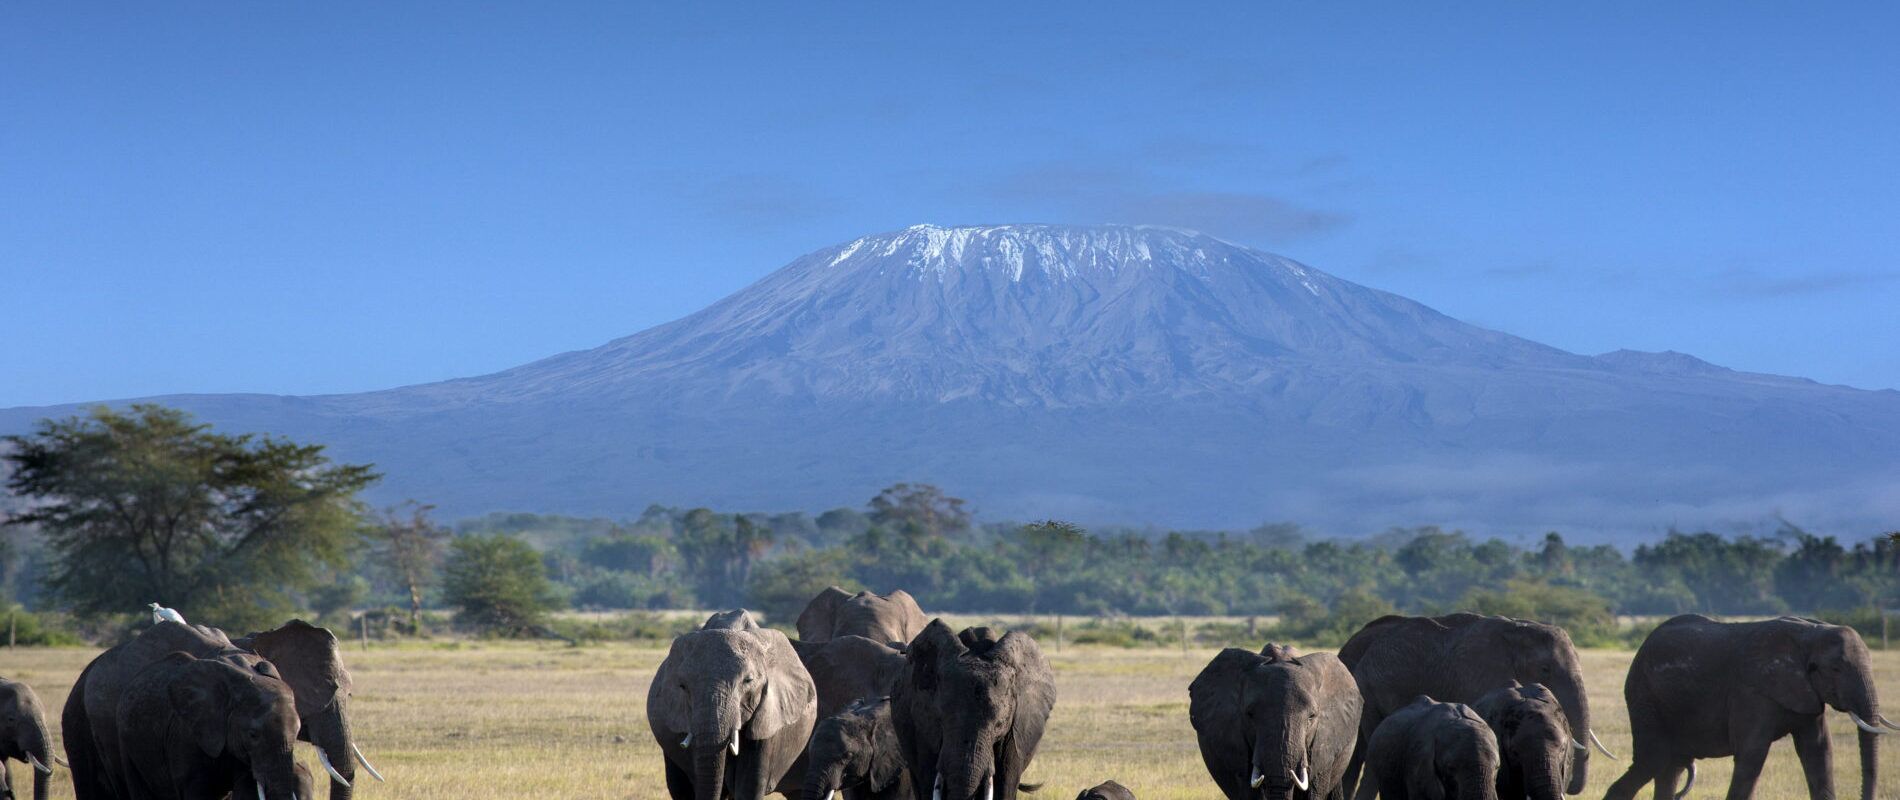 Elefantenherde mit Elefantenbaby vor Berg mit weißem Gipfel